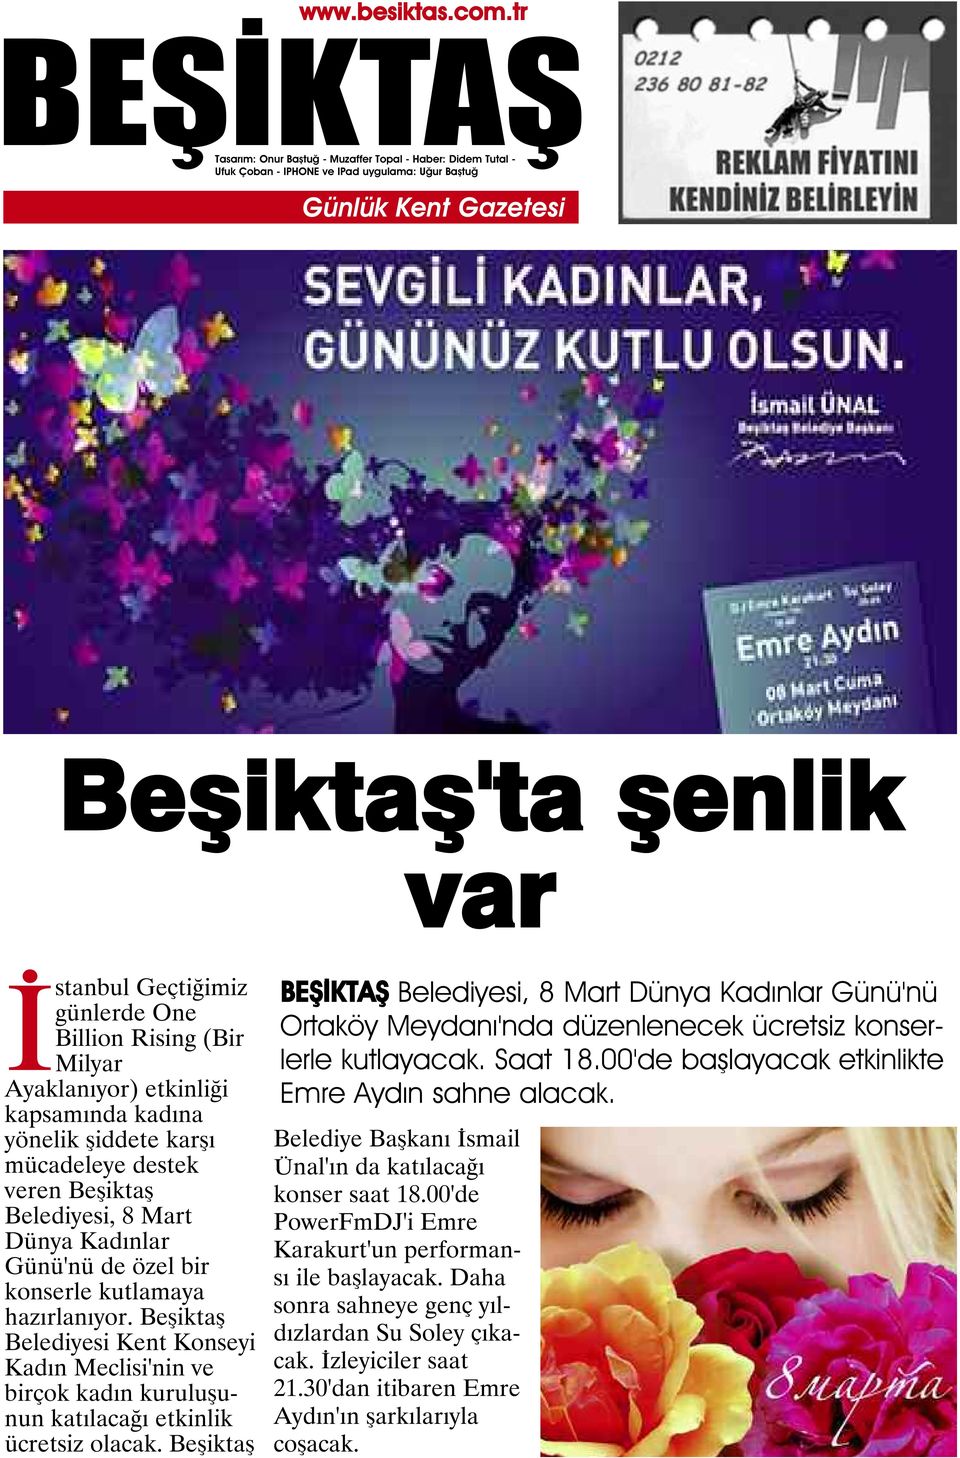 Beşiktaş Belediyesi, 8 Mart Dünya Kadınlar Günü'nü Ortaköy Meydanı'nda düzenlenecek ücretsiz konserlerle kutlayacak. Saat 18.00'de başlayacak etkinlikte Emre Aydın sahne alacak.